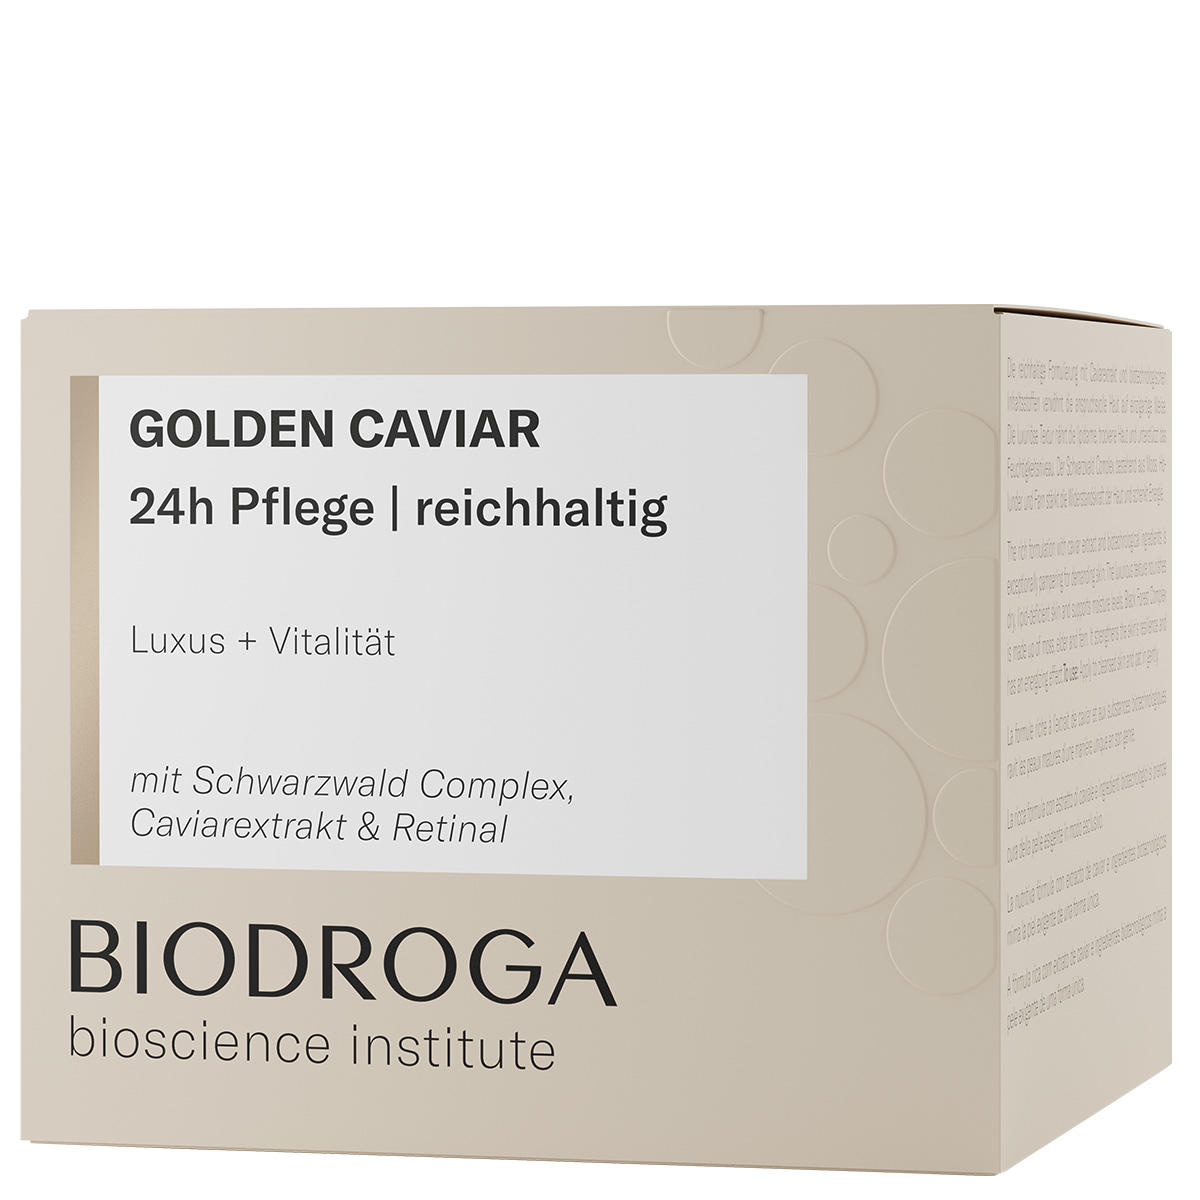 BIODROGA Bioscience Institute GOLDEN CAVIAR Assistenza 24 ore su 24 ricca 50 ml - 2